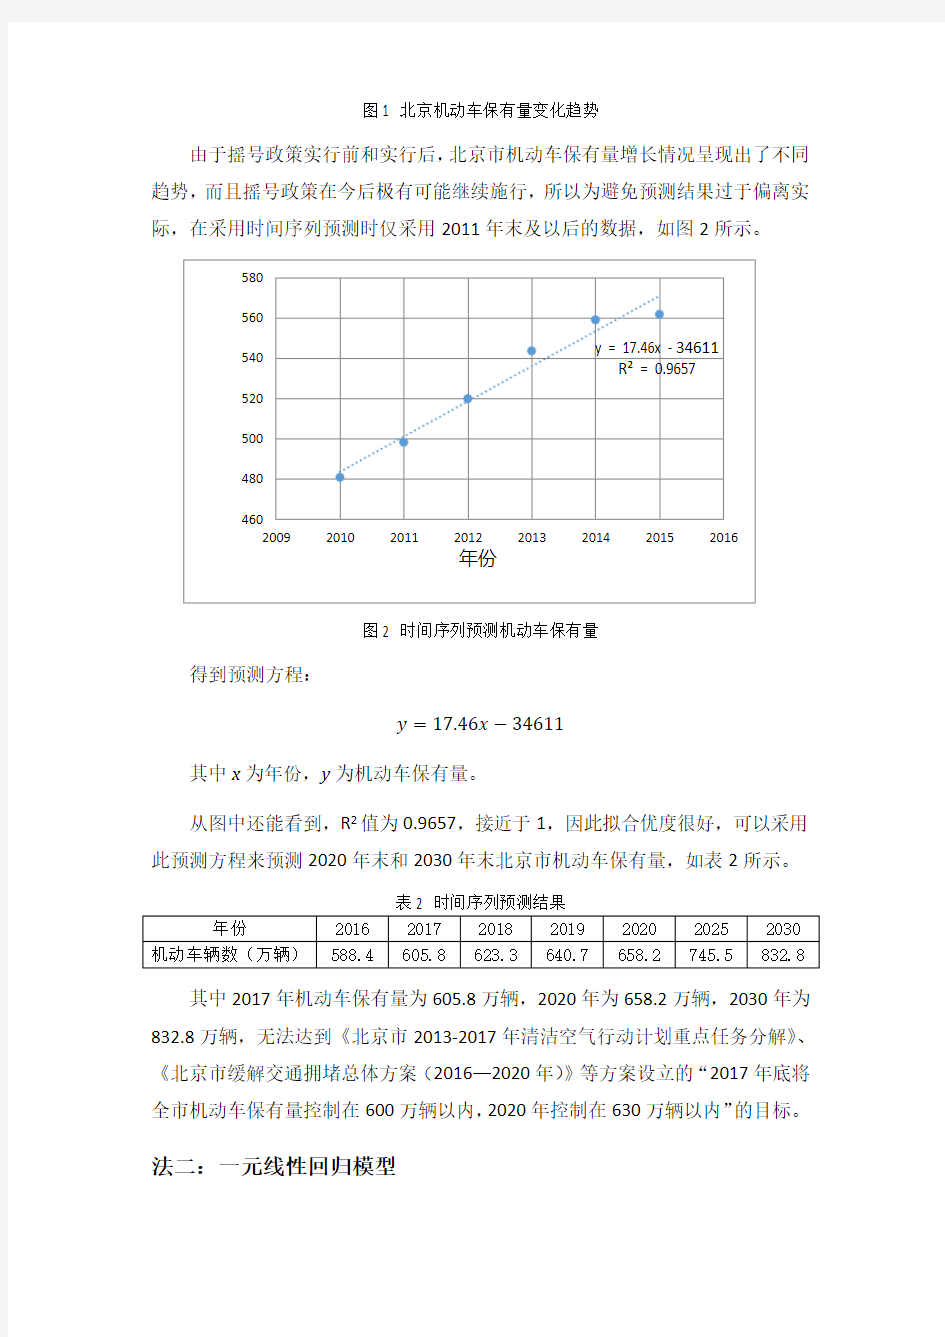 2020至2030年北京市机动车保有量预测